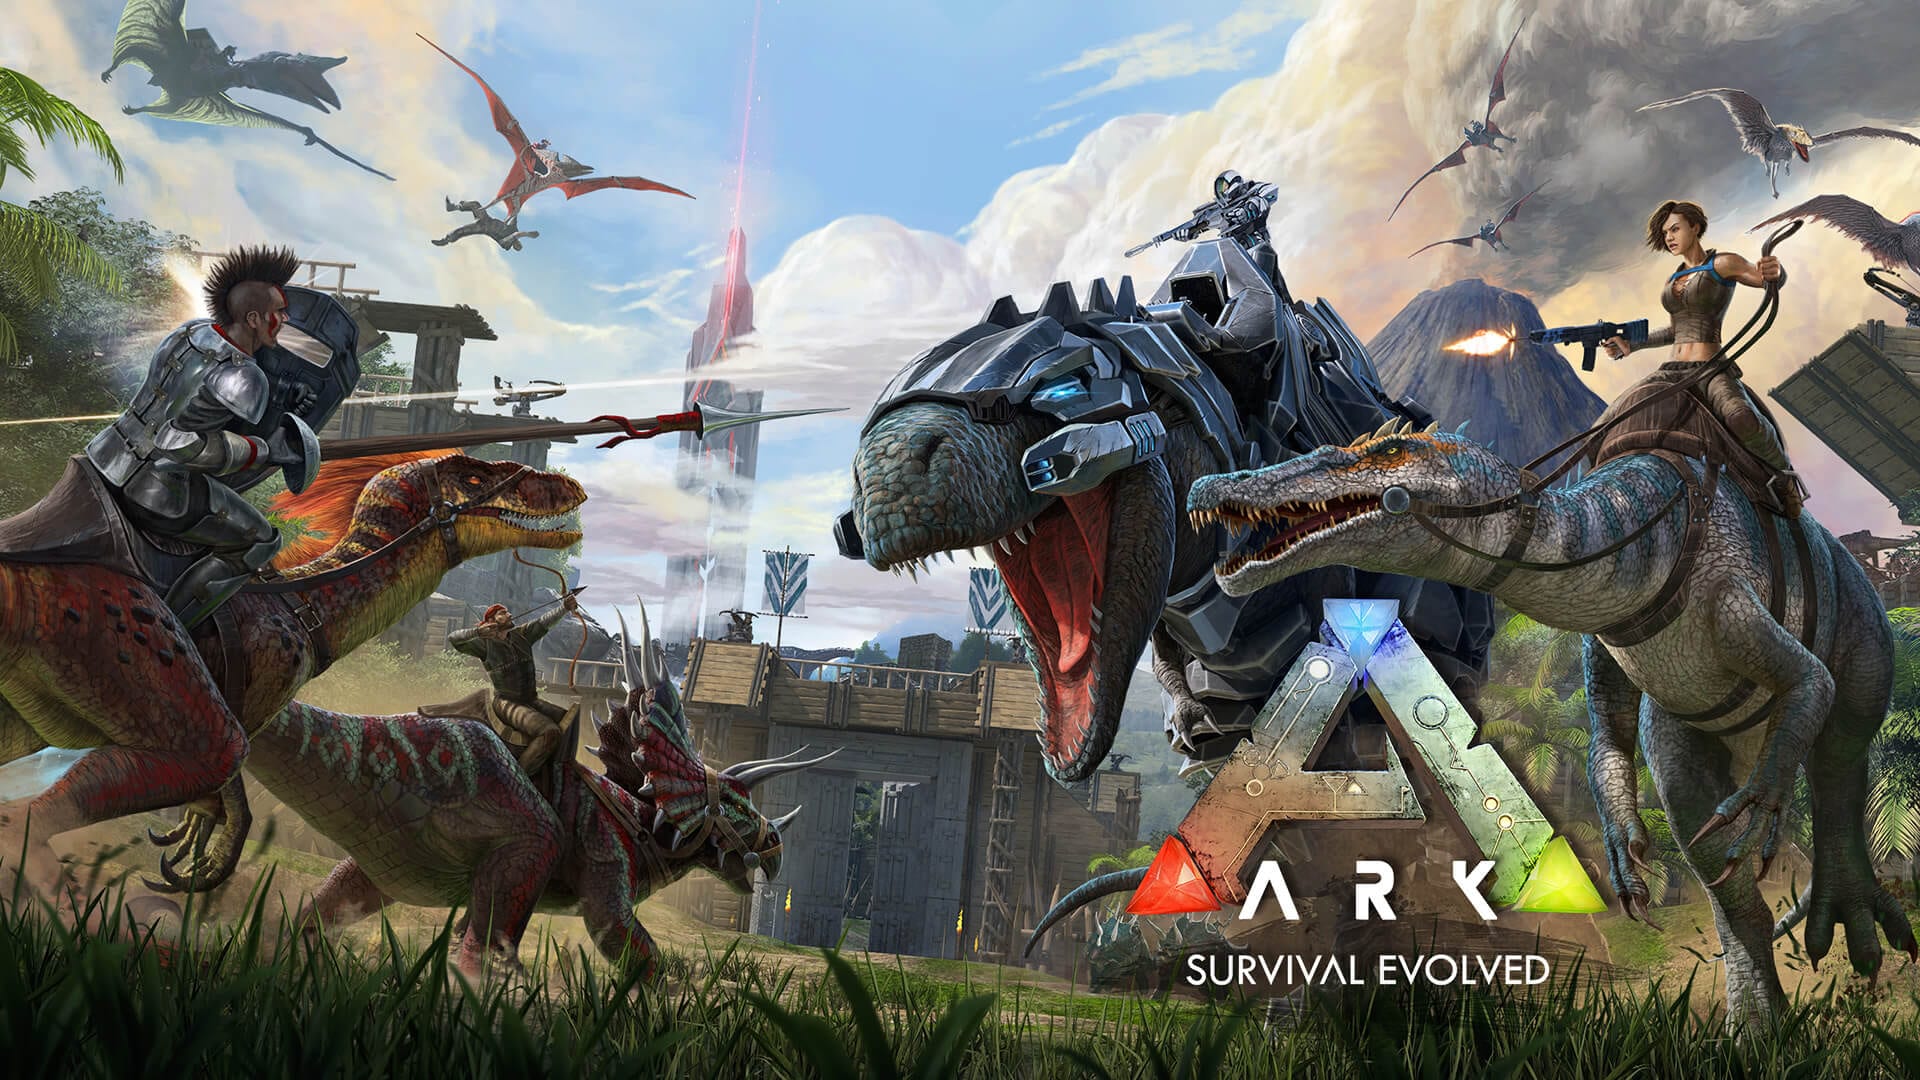 恐竜サバイバルゲーム Ark Survival Evolved がepic Games Storeにて無料配布開始 にじさんじ 内で大戦争も起きた大人気ゲームをプレイするチャンス